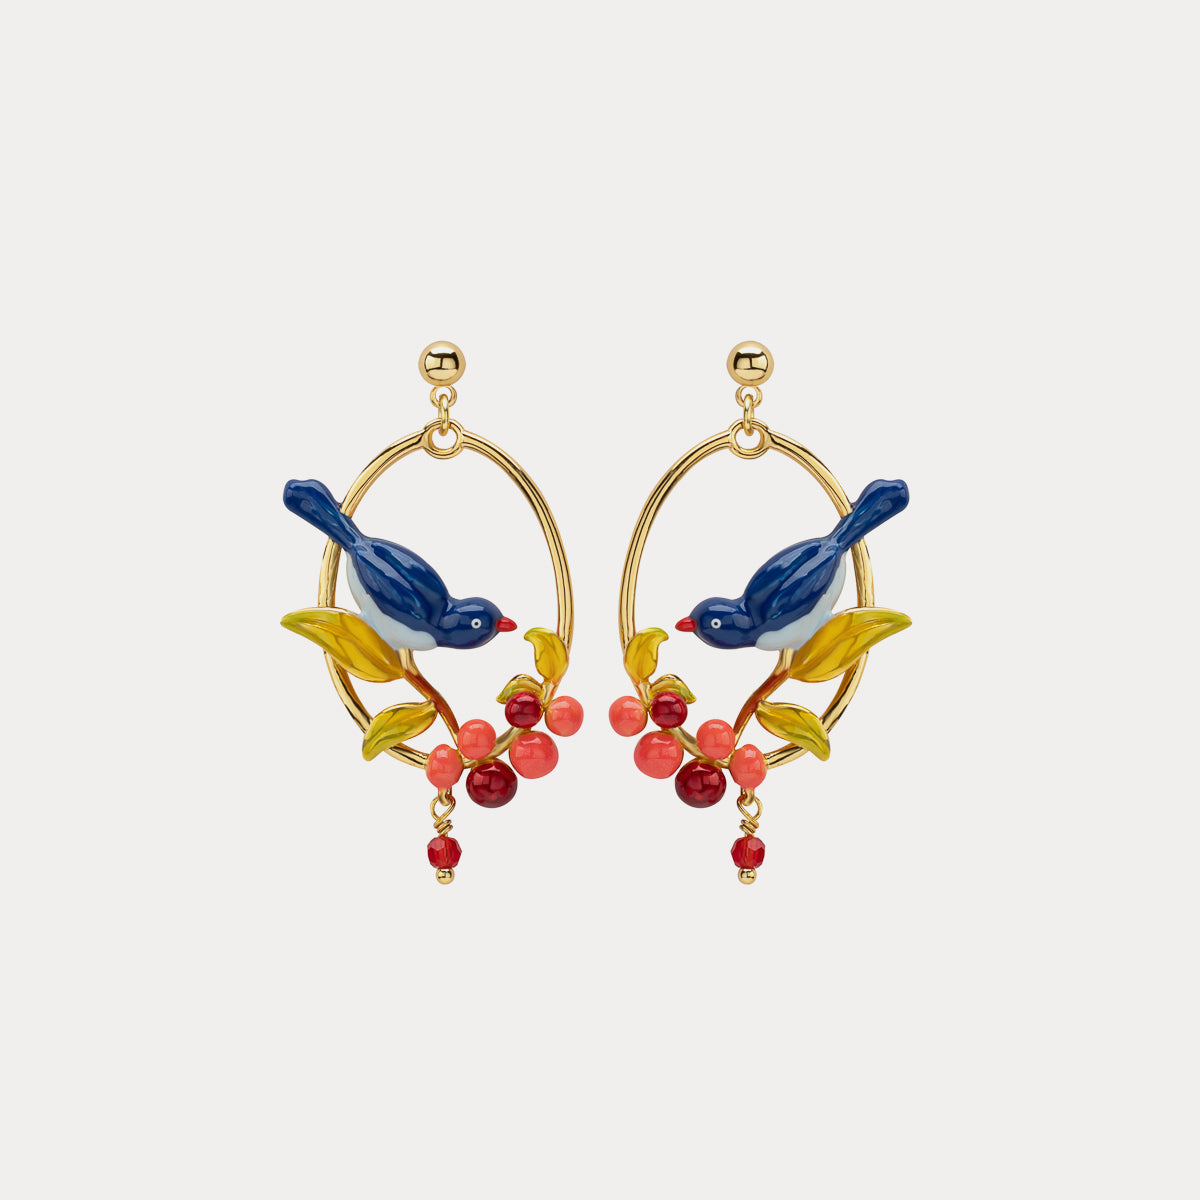 Selenichast pair of lovebirds earrings